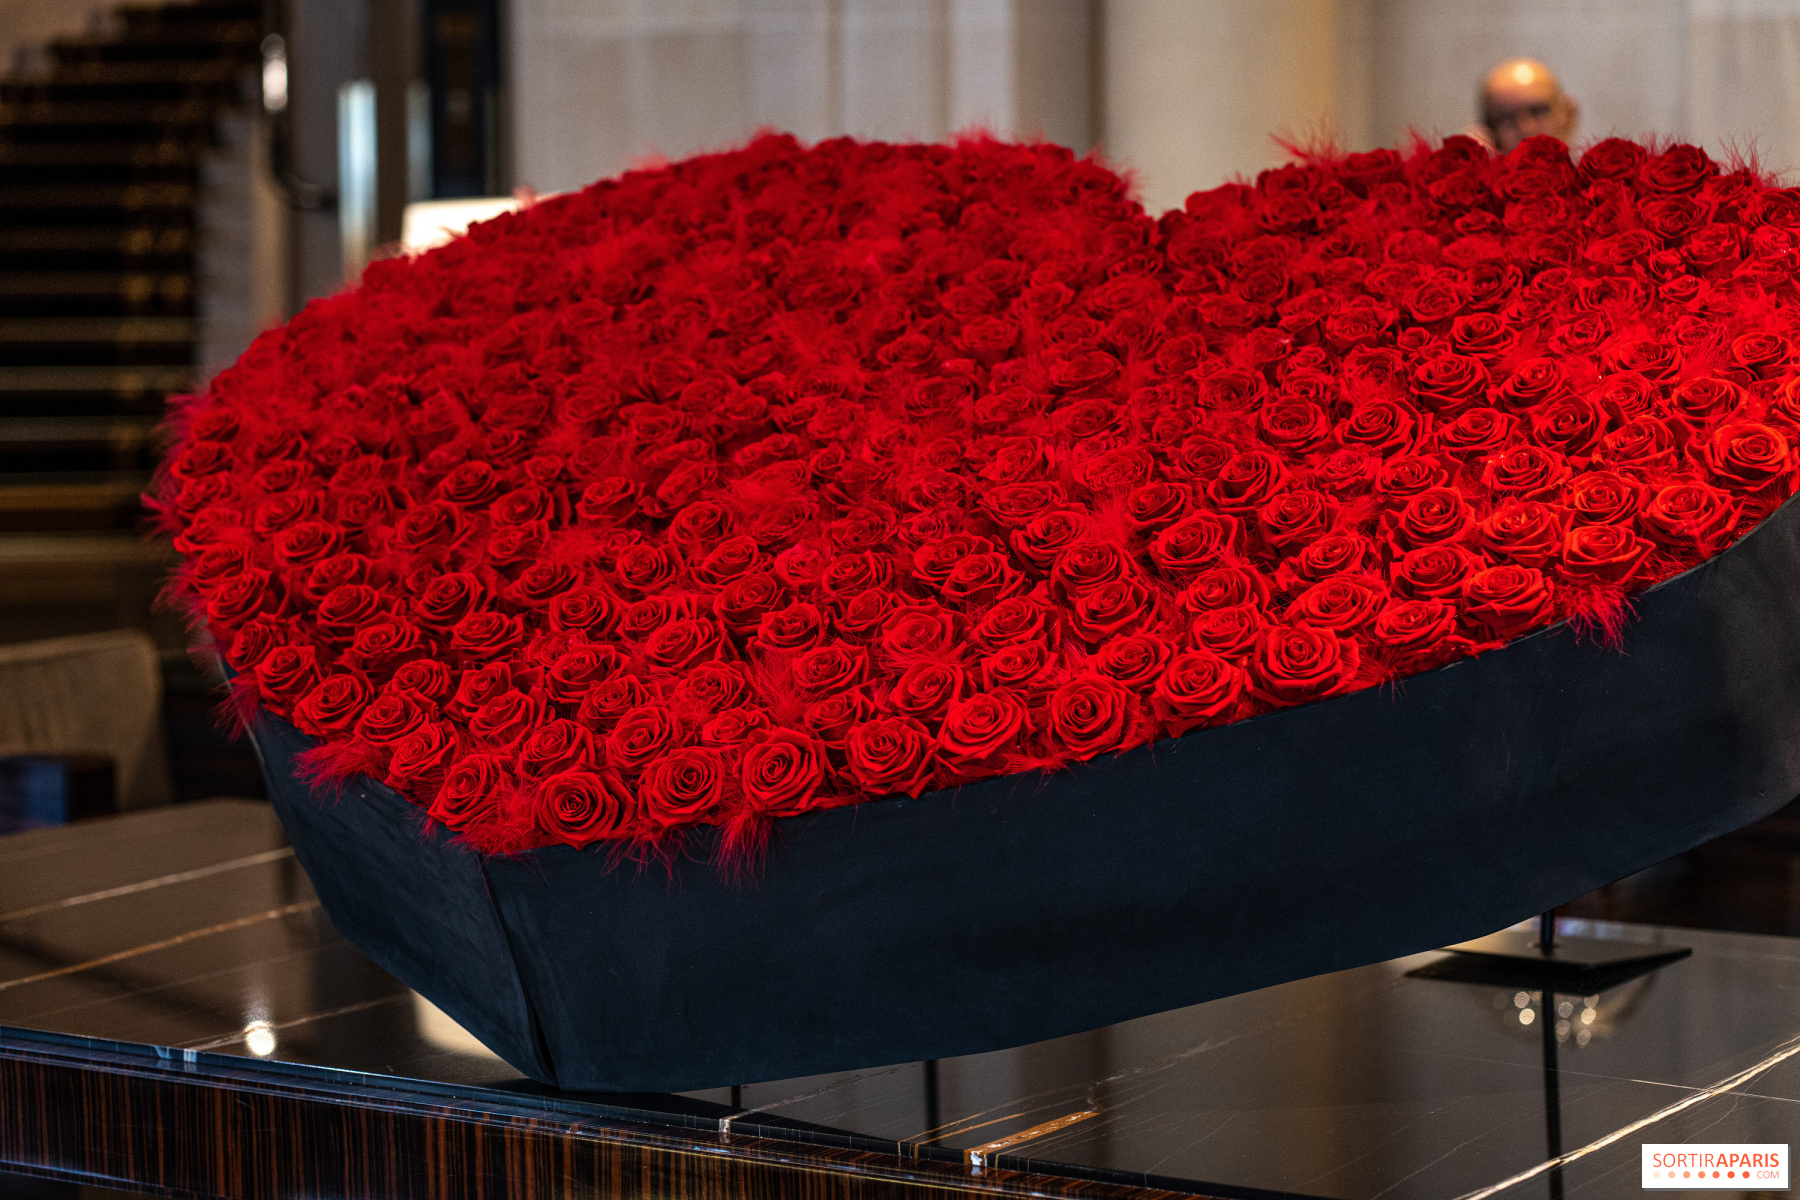 Histoire et tradition : pourquoi la rose rouge est le symbole de l'amour ?  